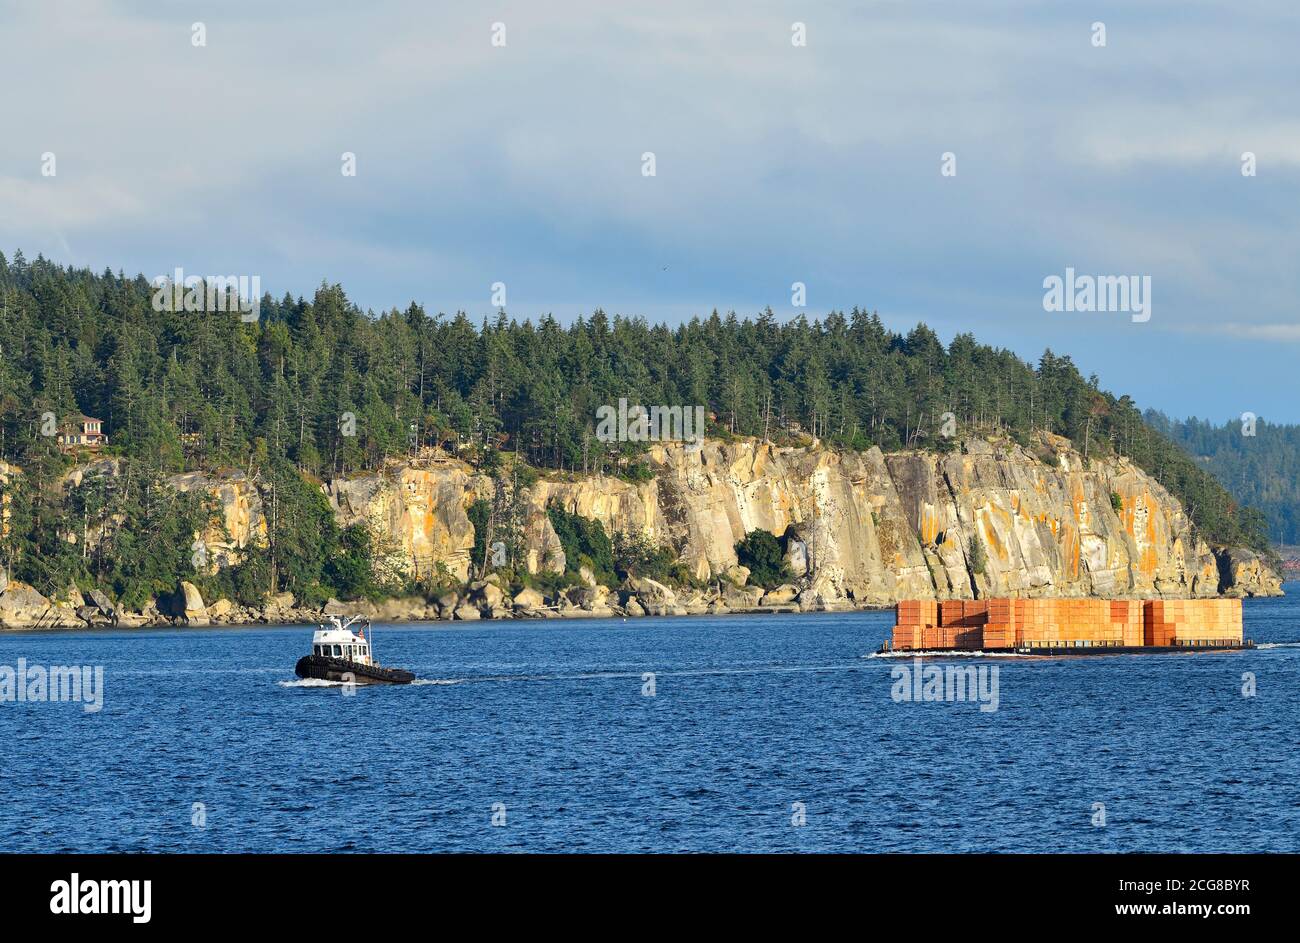 Un remolcador en funcionamiento que tira de una carga de productos de capas a través del puerto en Nanaimo en la Isla de Vancouver British Columbia Canadá. Foto de stock